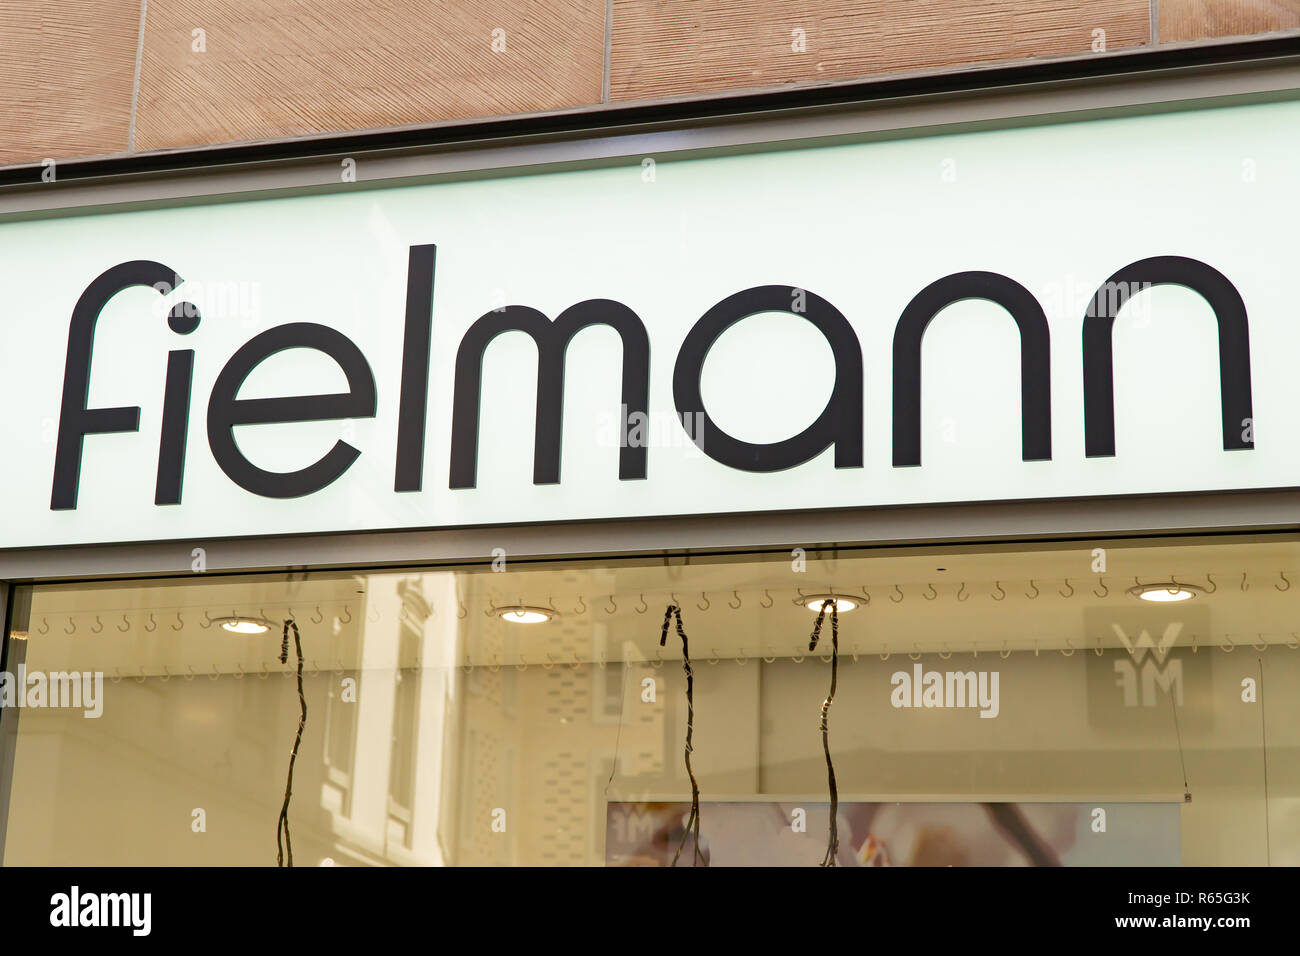 Wiesbaden, Germany - June 03 2018: FIELMANN logo on a facade. Fielmann ...